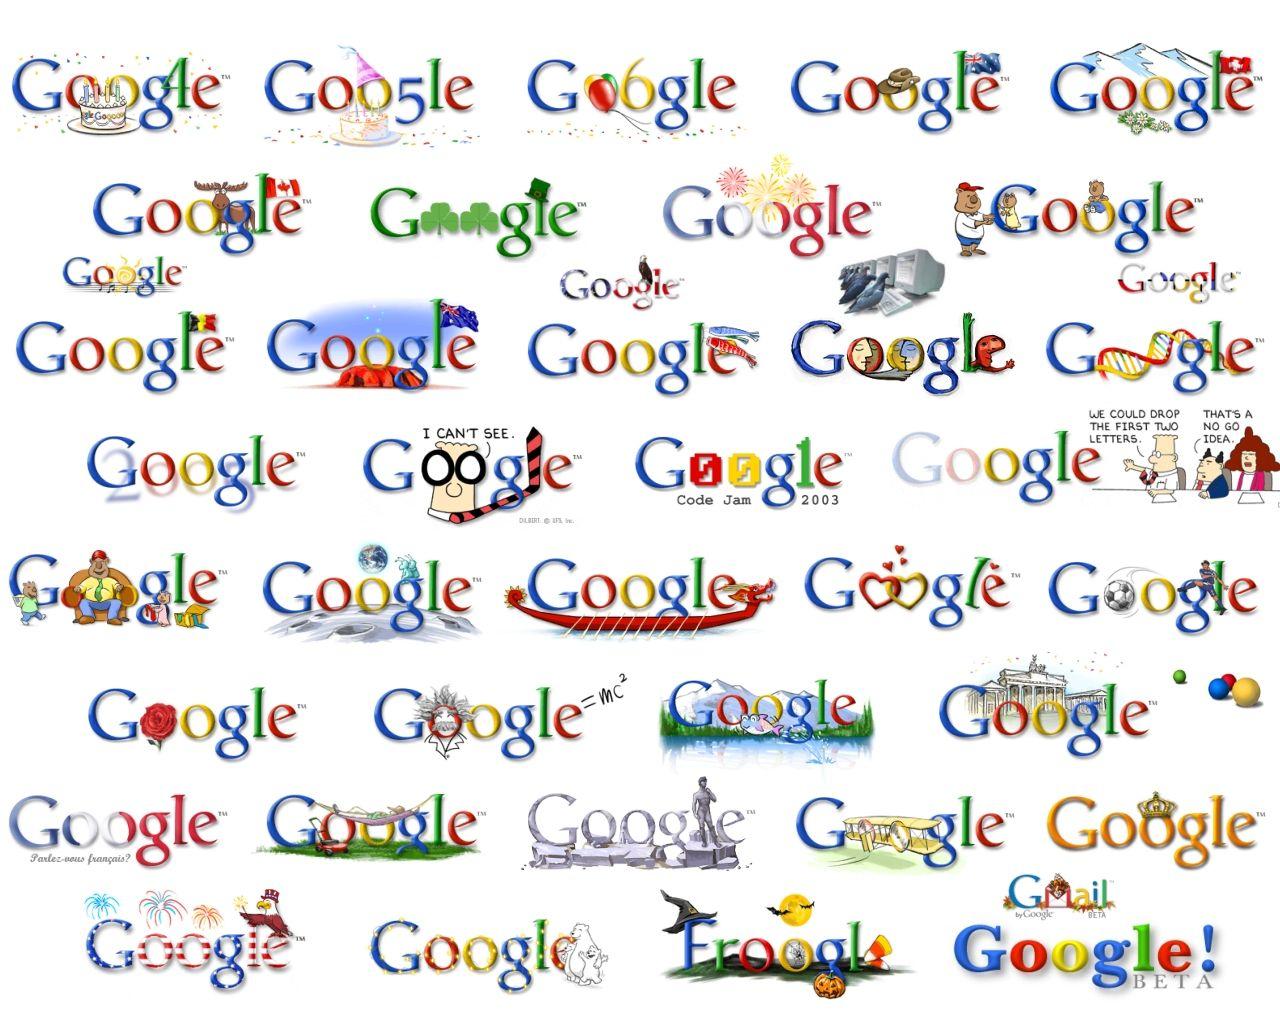 Every Google Logo - gle.ovo.kom.uni.st Google Stats